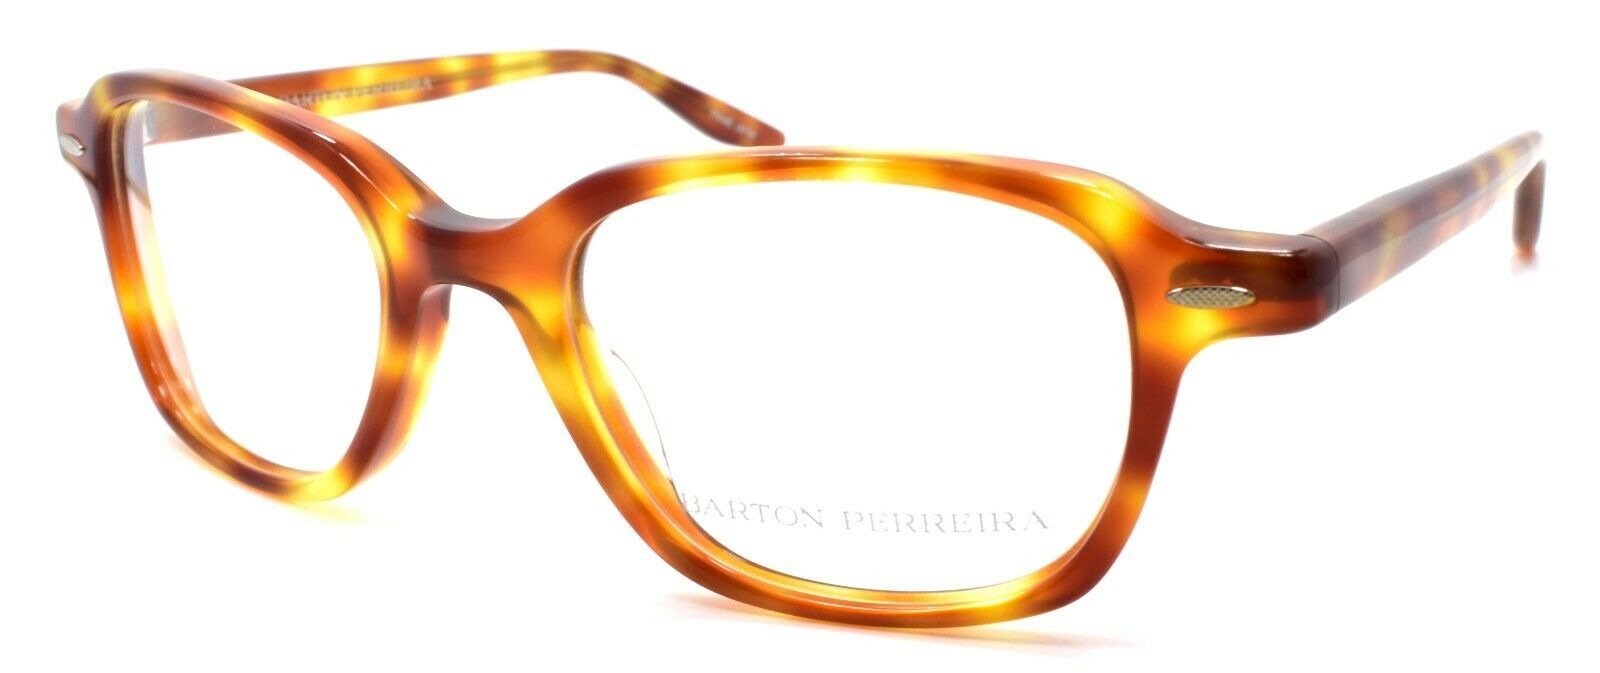 1-Barton Perreira Carlton HAV Unisex Eyeglasses Frames 48-19-138 Havana-672263037736-IKSpecs